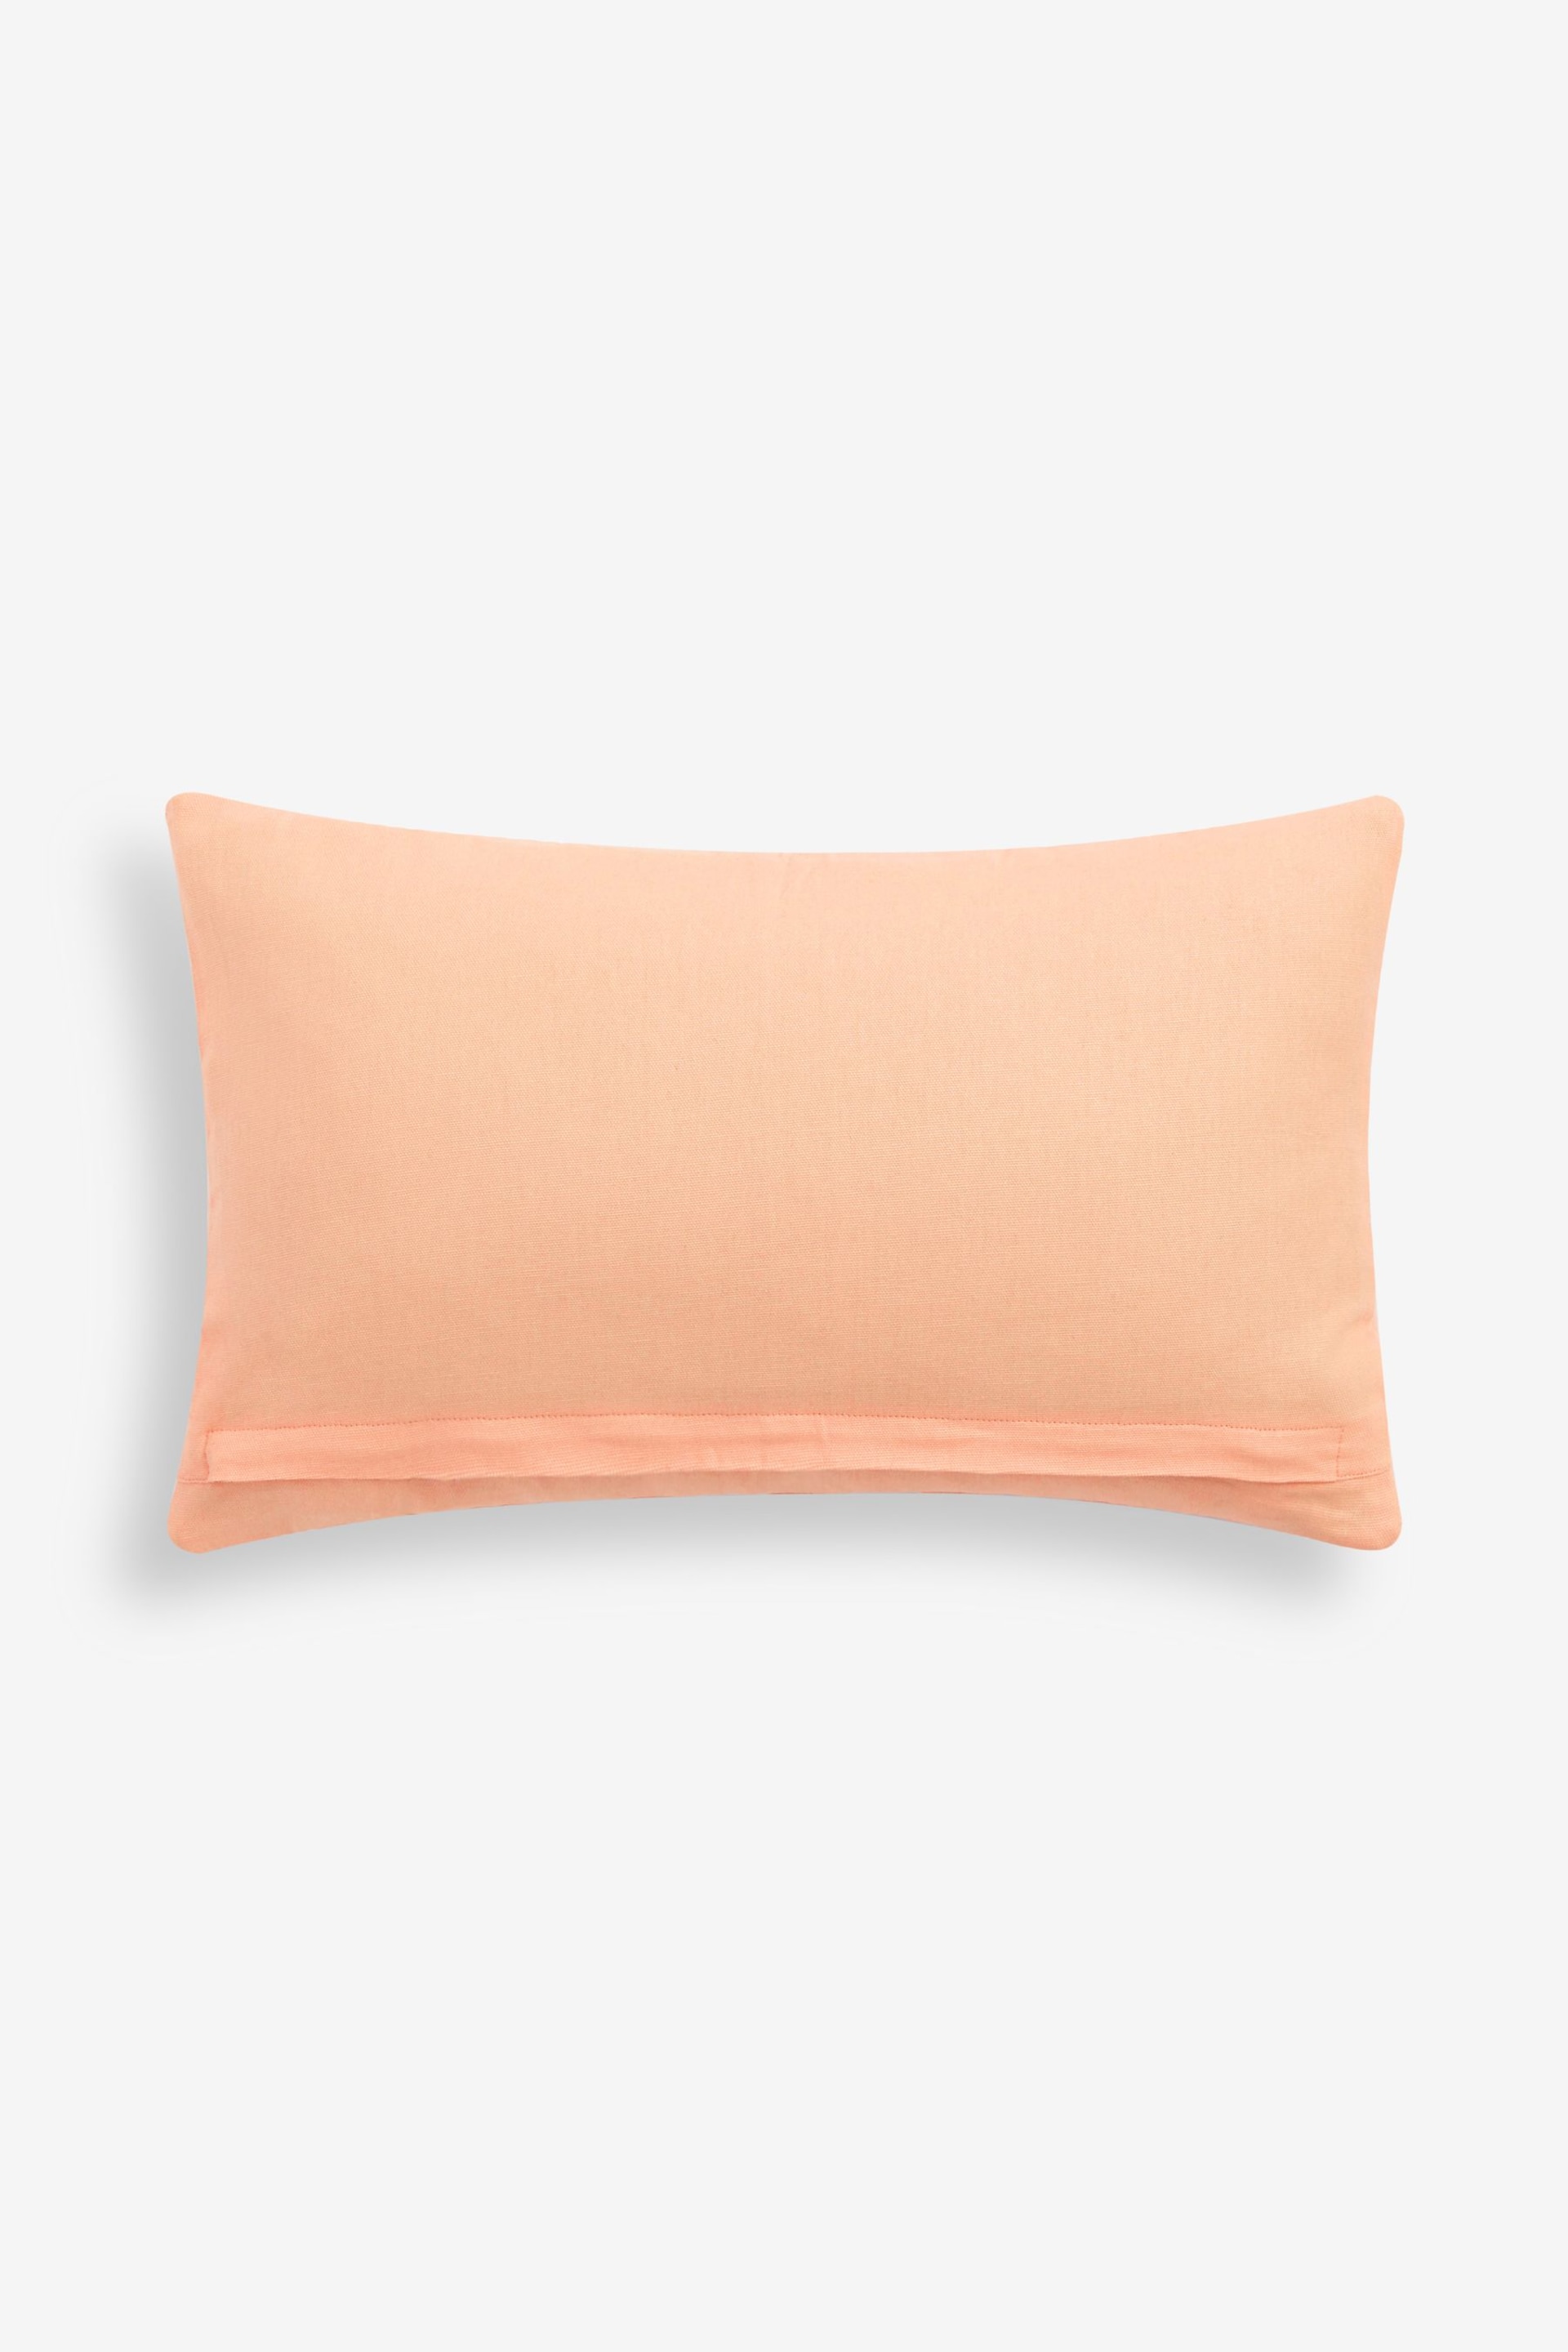 Peach Pink 50 x 30cm Velvet Stipe Sunshine Slogan Oblong Cushion - Image 3 of 5